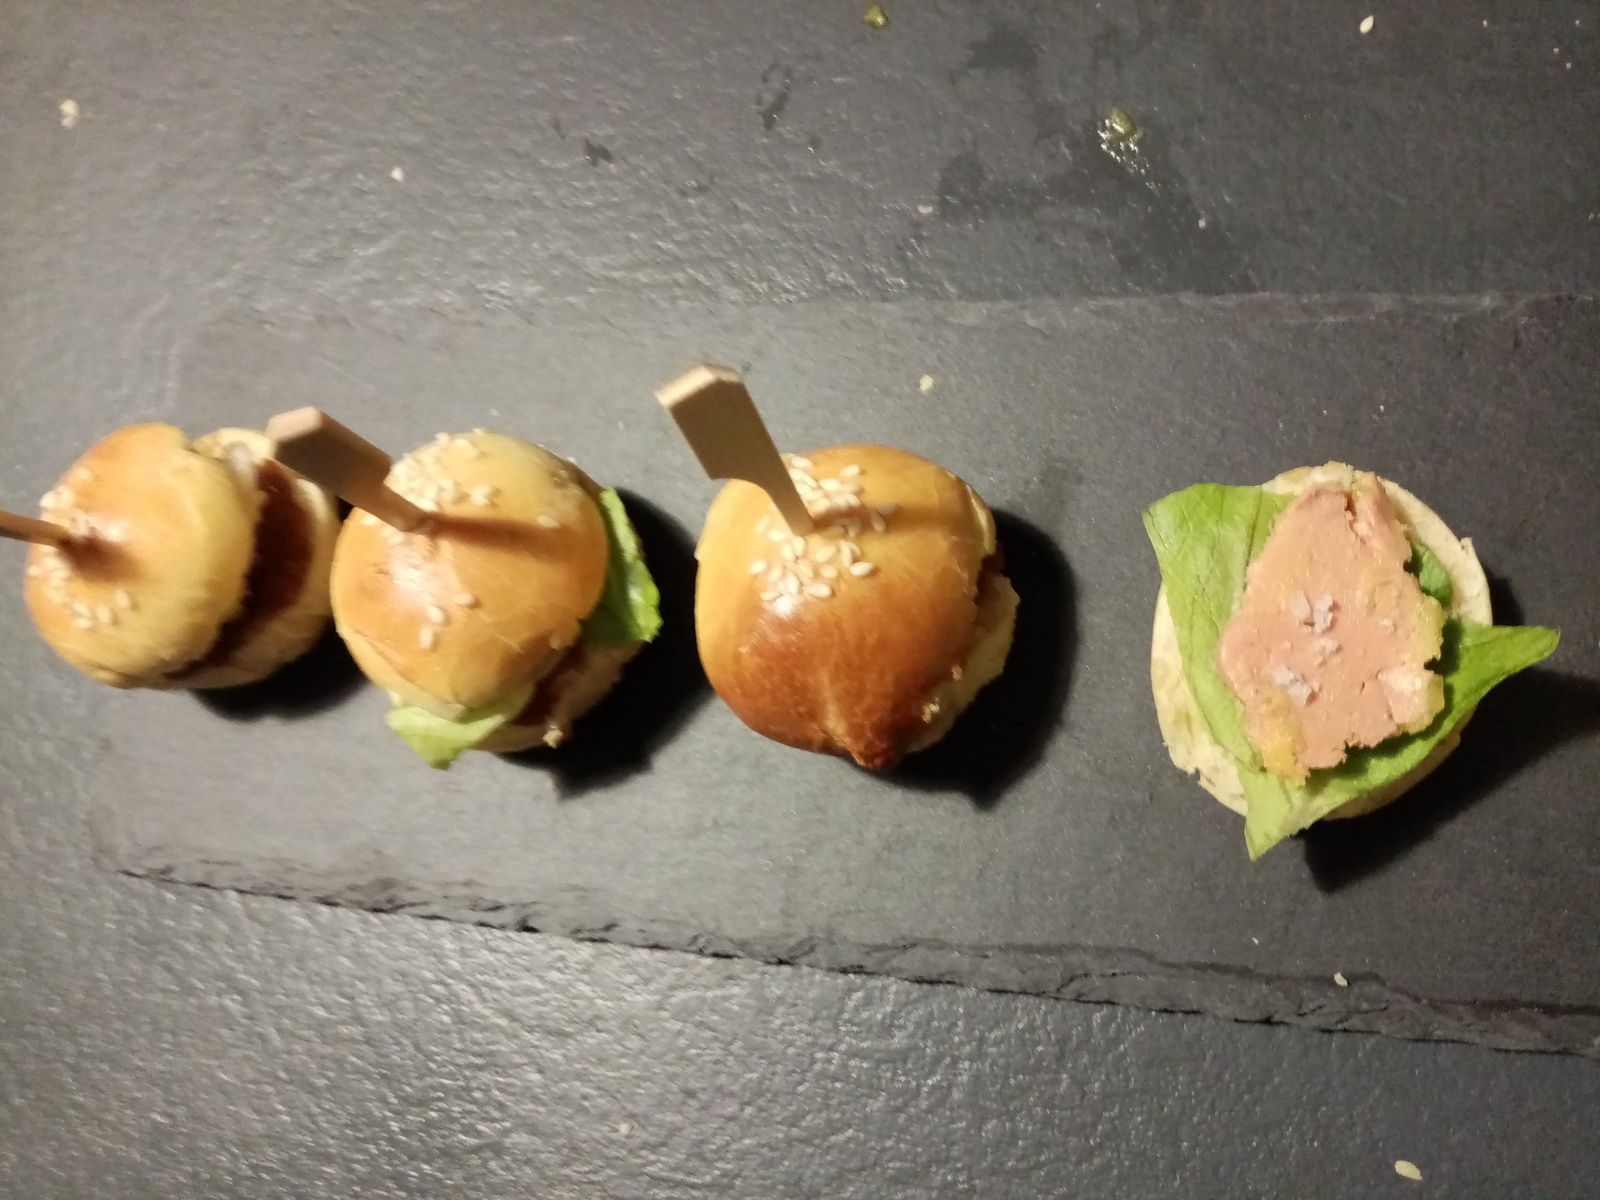 Petits burgers apéro au foie gras